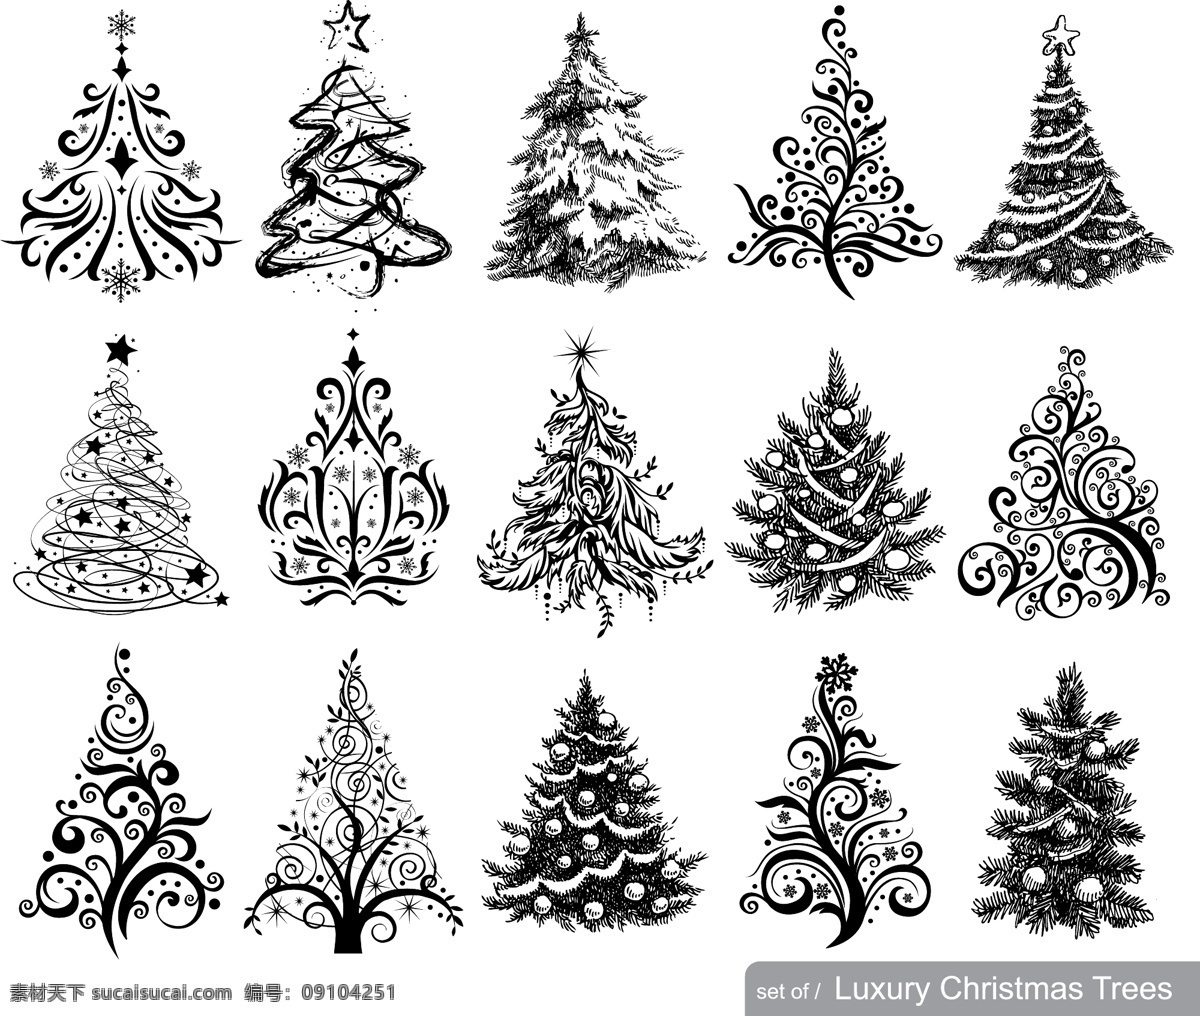 手绘 圣诞树 纹样 矢量 圣诞节 矢量图 样式 圣诞树花纹 其他矢量图